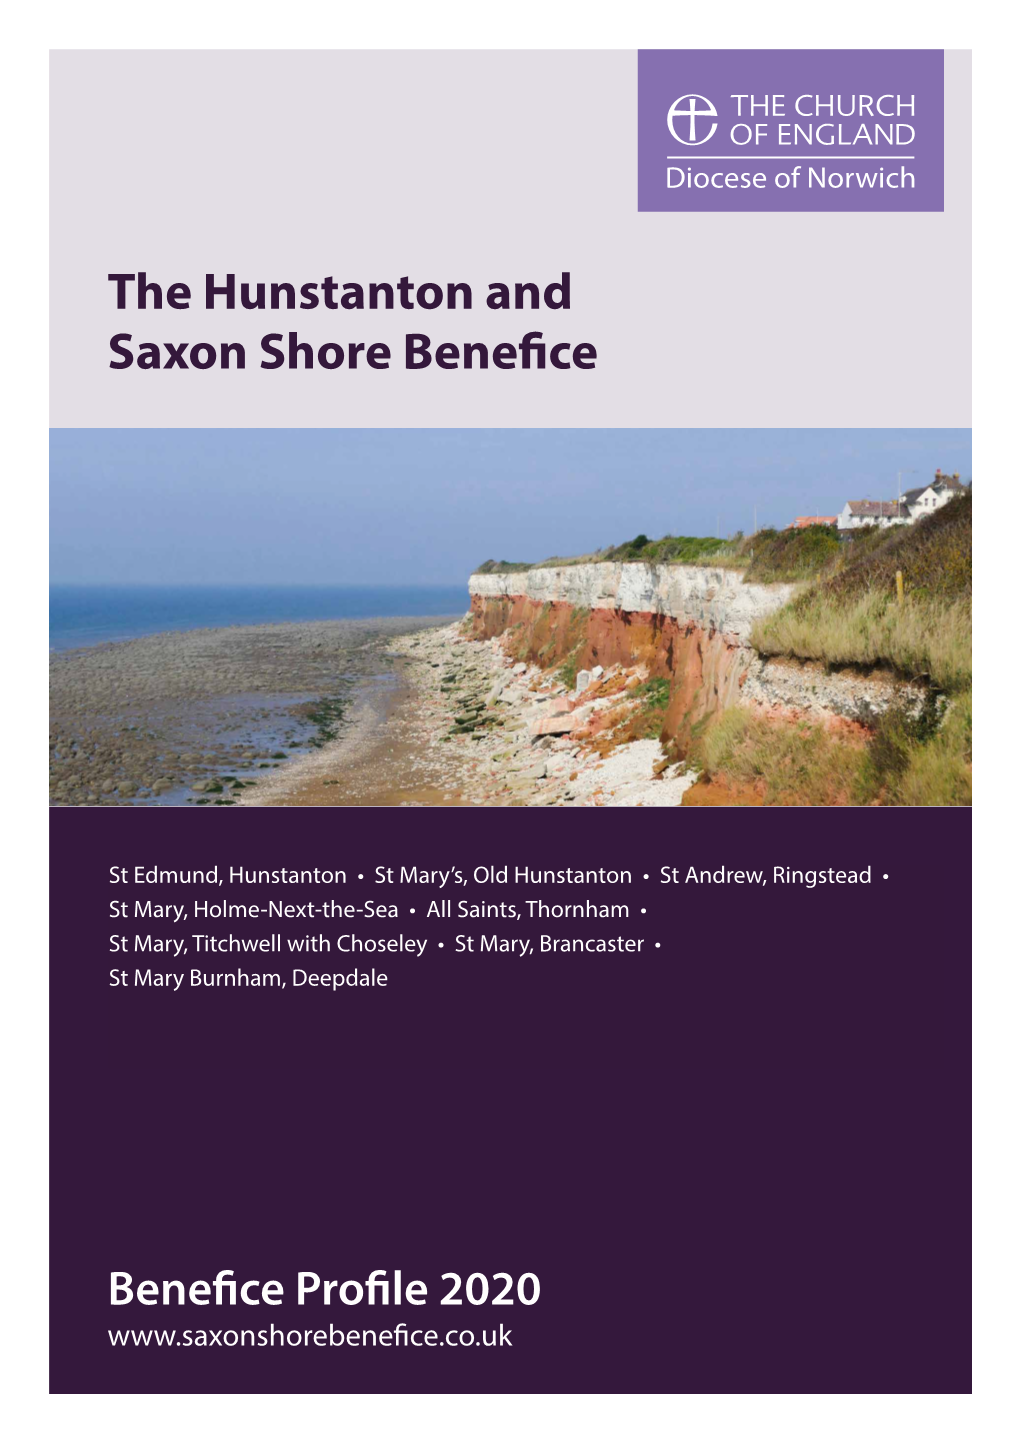 The Hunstanton and Saxon Shore Benefice